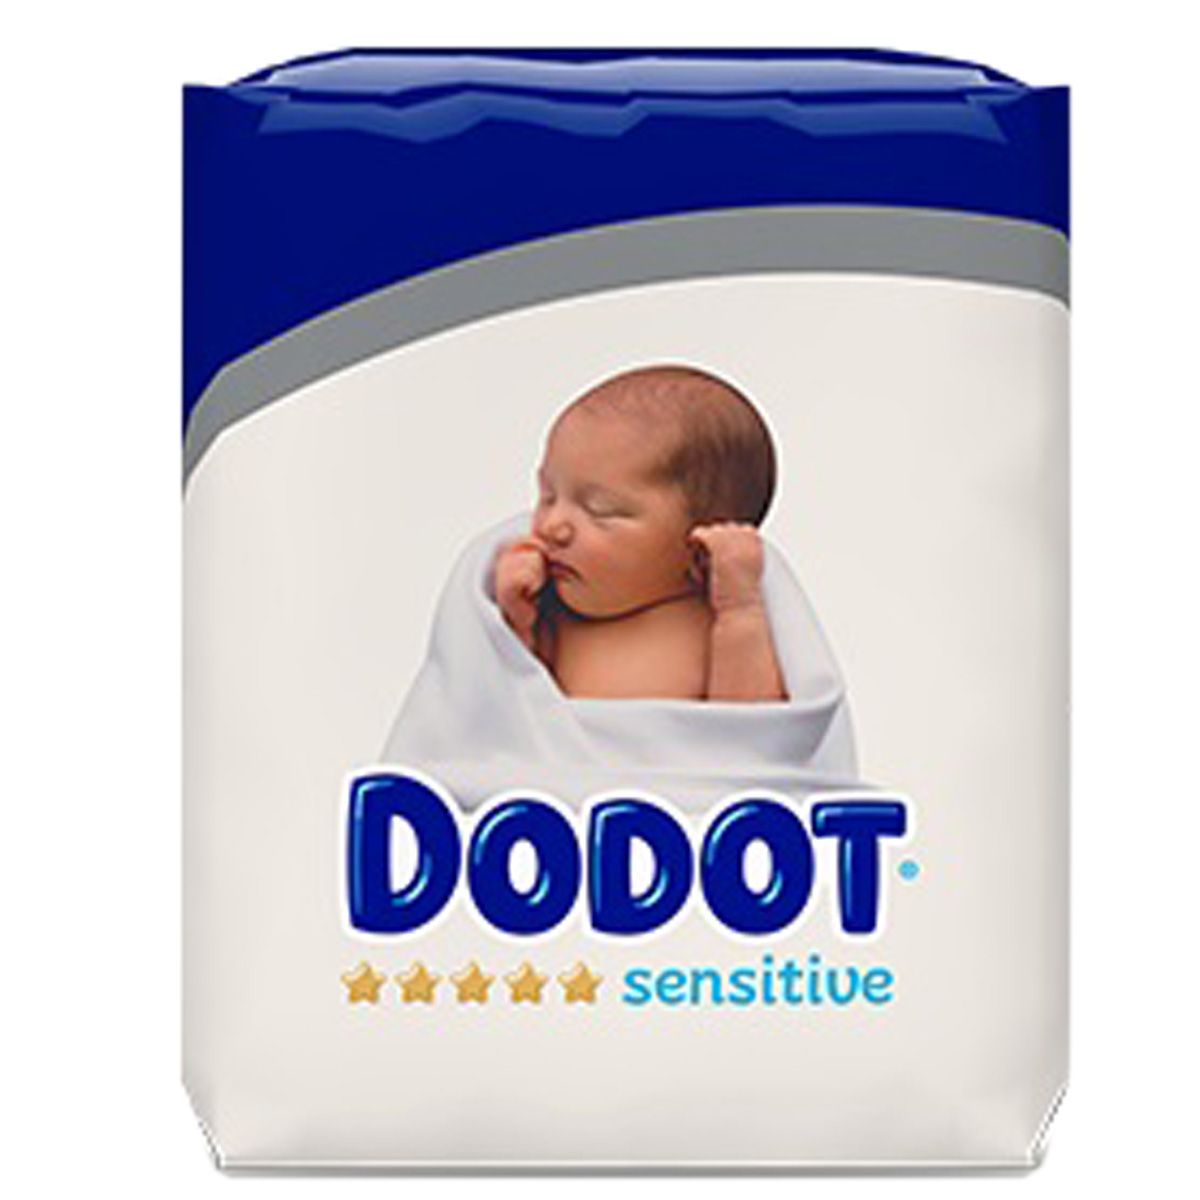 Comprar Dodot Sensitive pañales recién nacido talla 1, 80 pañales al mejor  precio